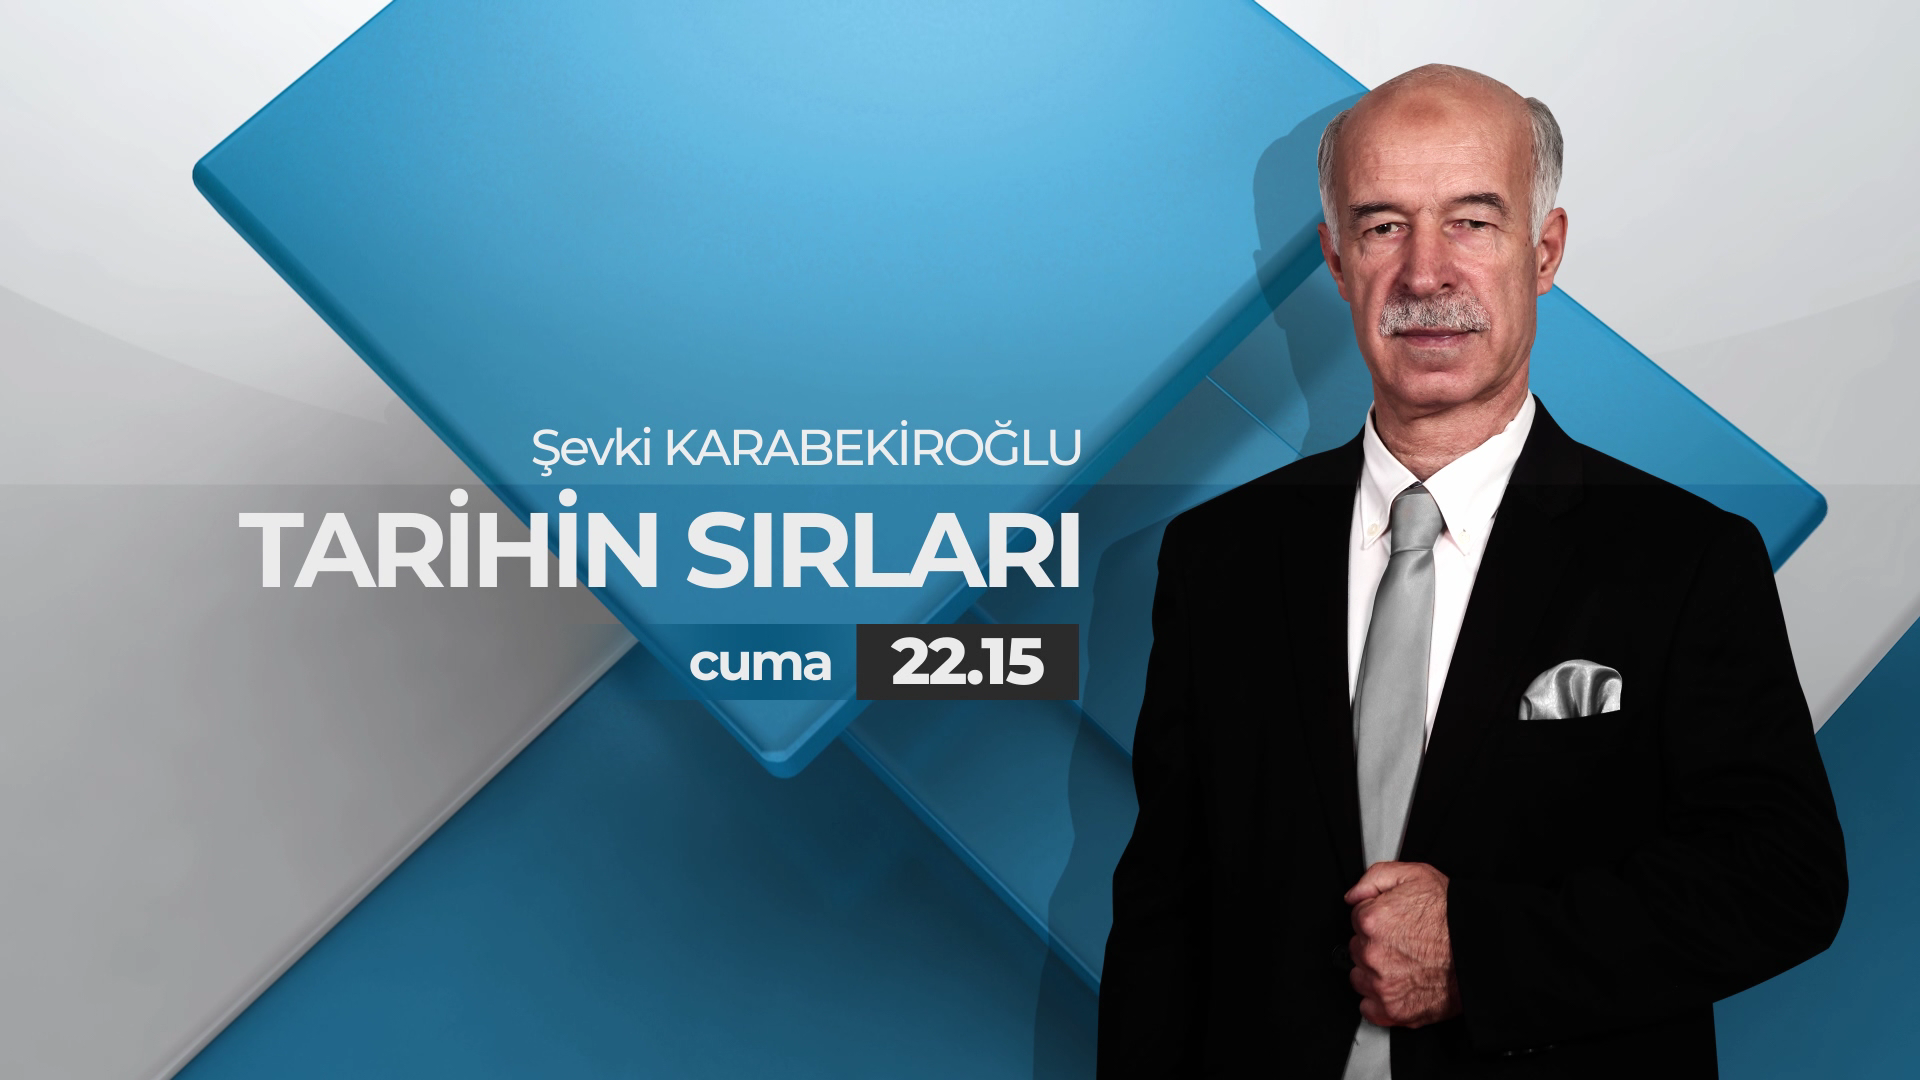 Tarihin Sırları Cuma 22.15'de Aksu TV Ekranlarında.